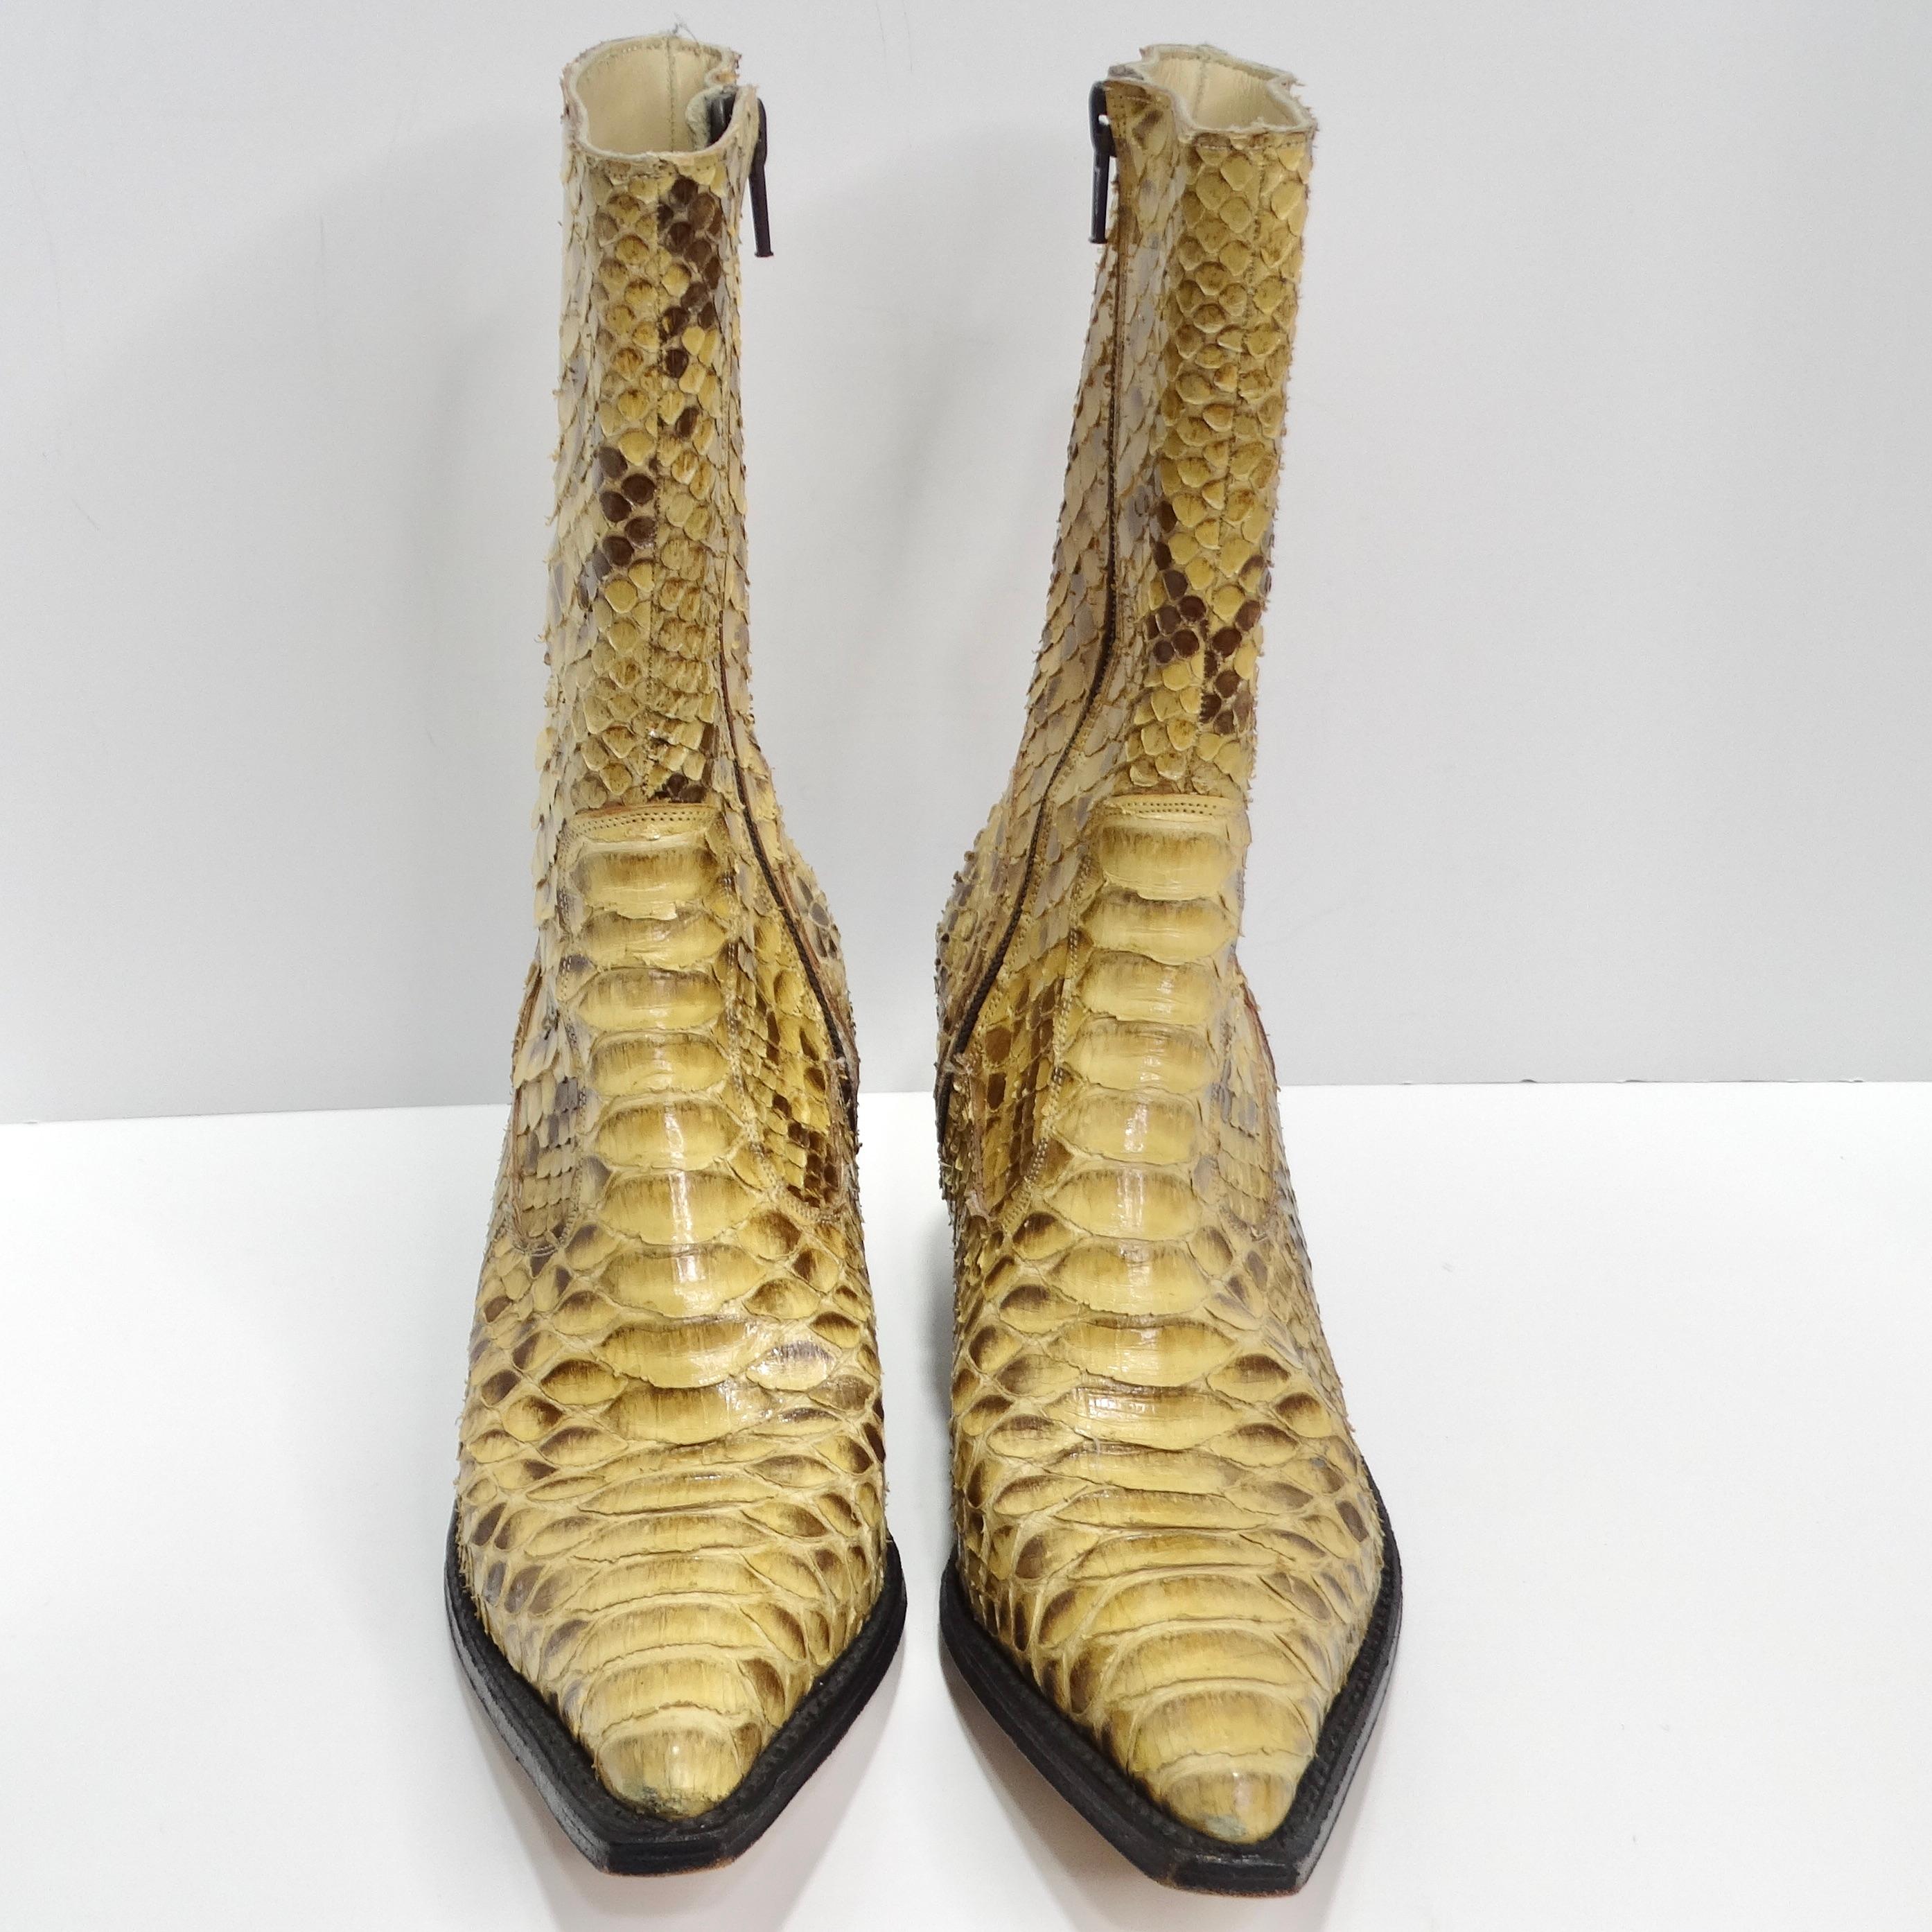 Die Tony Mora Python Cowboystiefel sind der Inbegriff von Luxus. Diese außergewöhnlichen Cowboy-Stiefel sind aus echtem braunen und beigen Pythonleder gefertigt und strahlen bei jedem Schritt Opulenz und Raffinesse aus. Die einzigartige Kombination